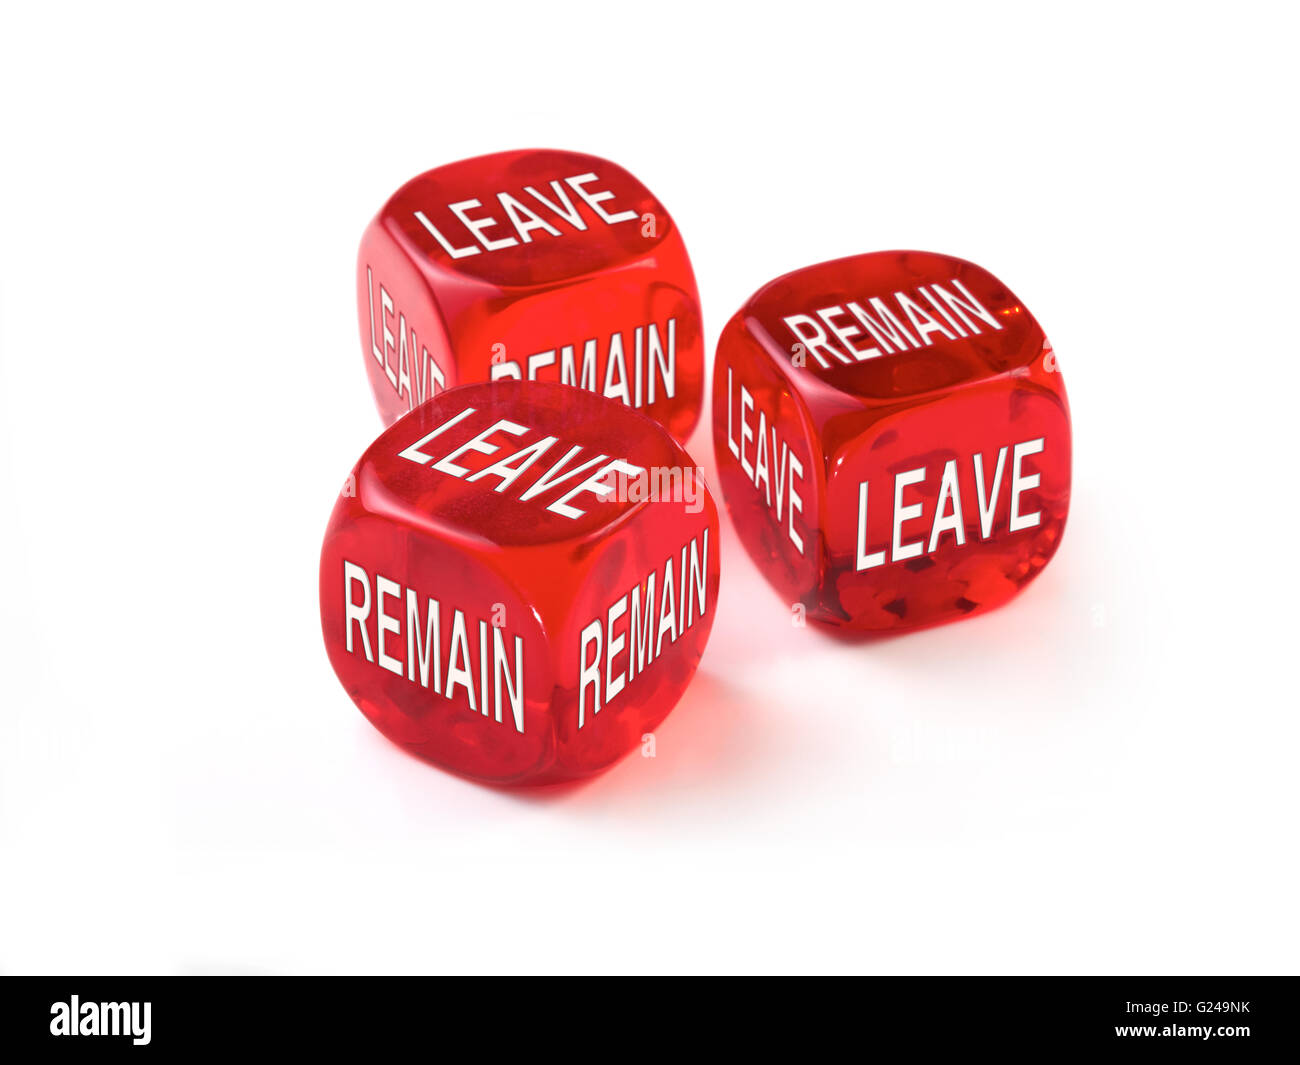 Lasciare o rimanere dice concetto. Regno Unito alle elezioni europee per decidere se lasciare l'Unione europea per una più indipendente dalla Gran Bretagna. Foto Stock